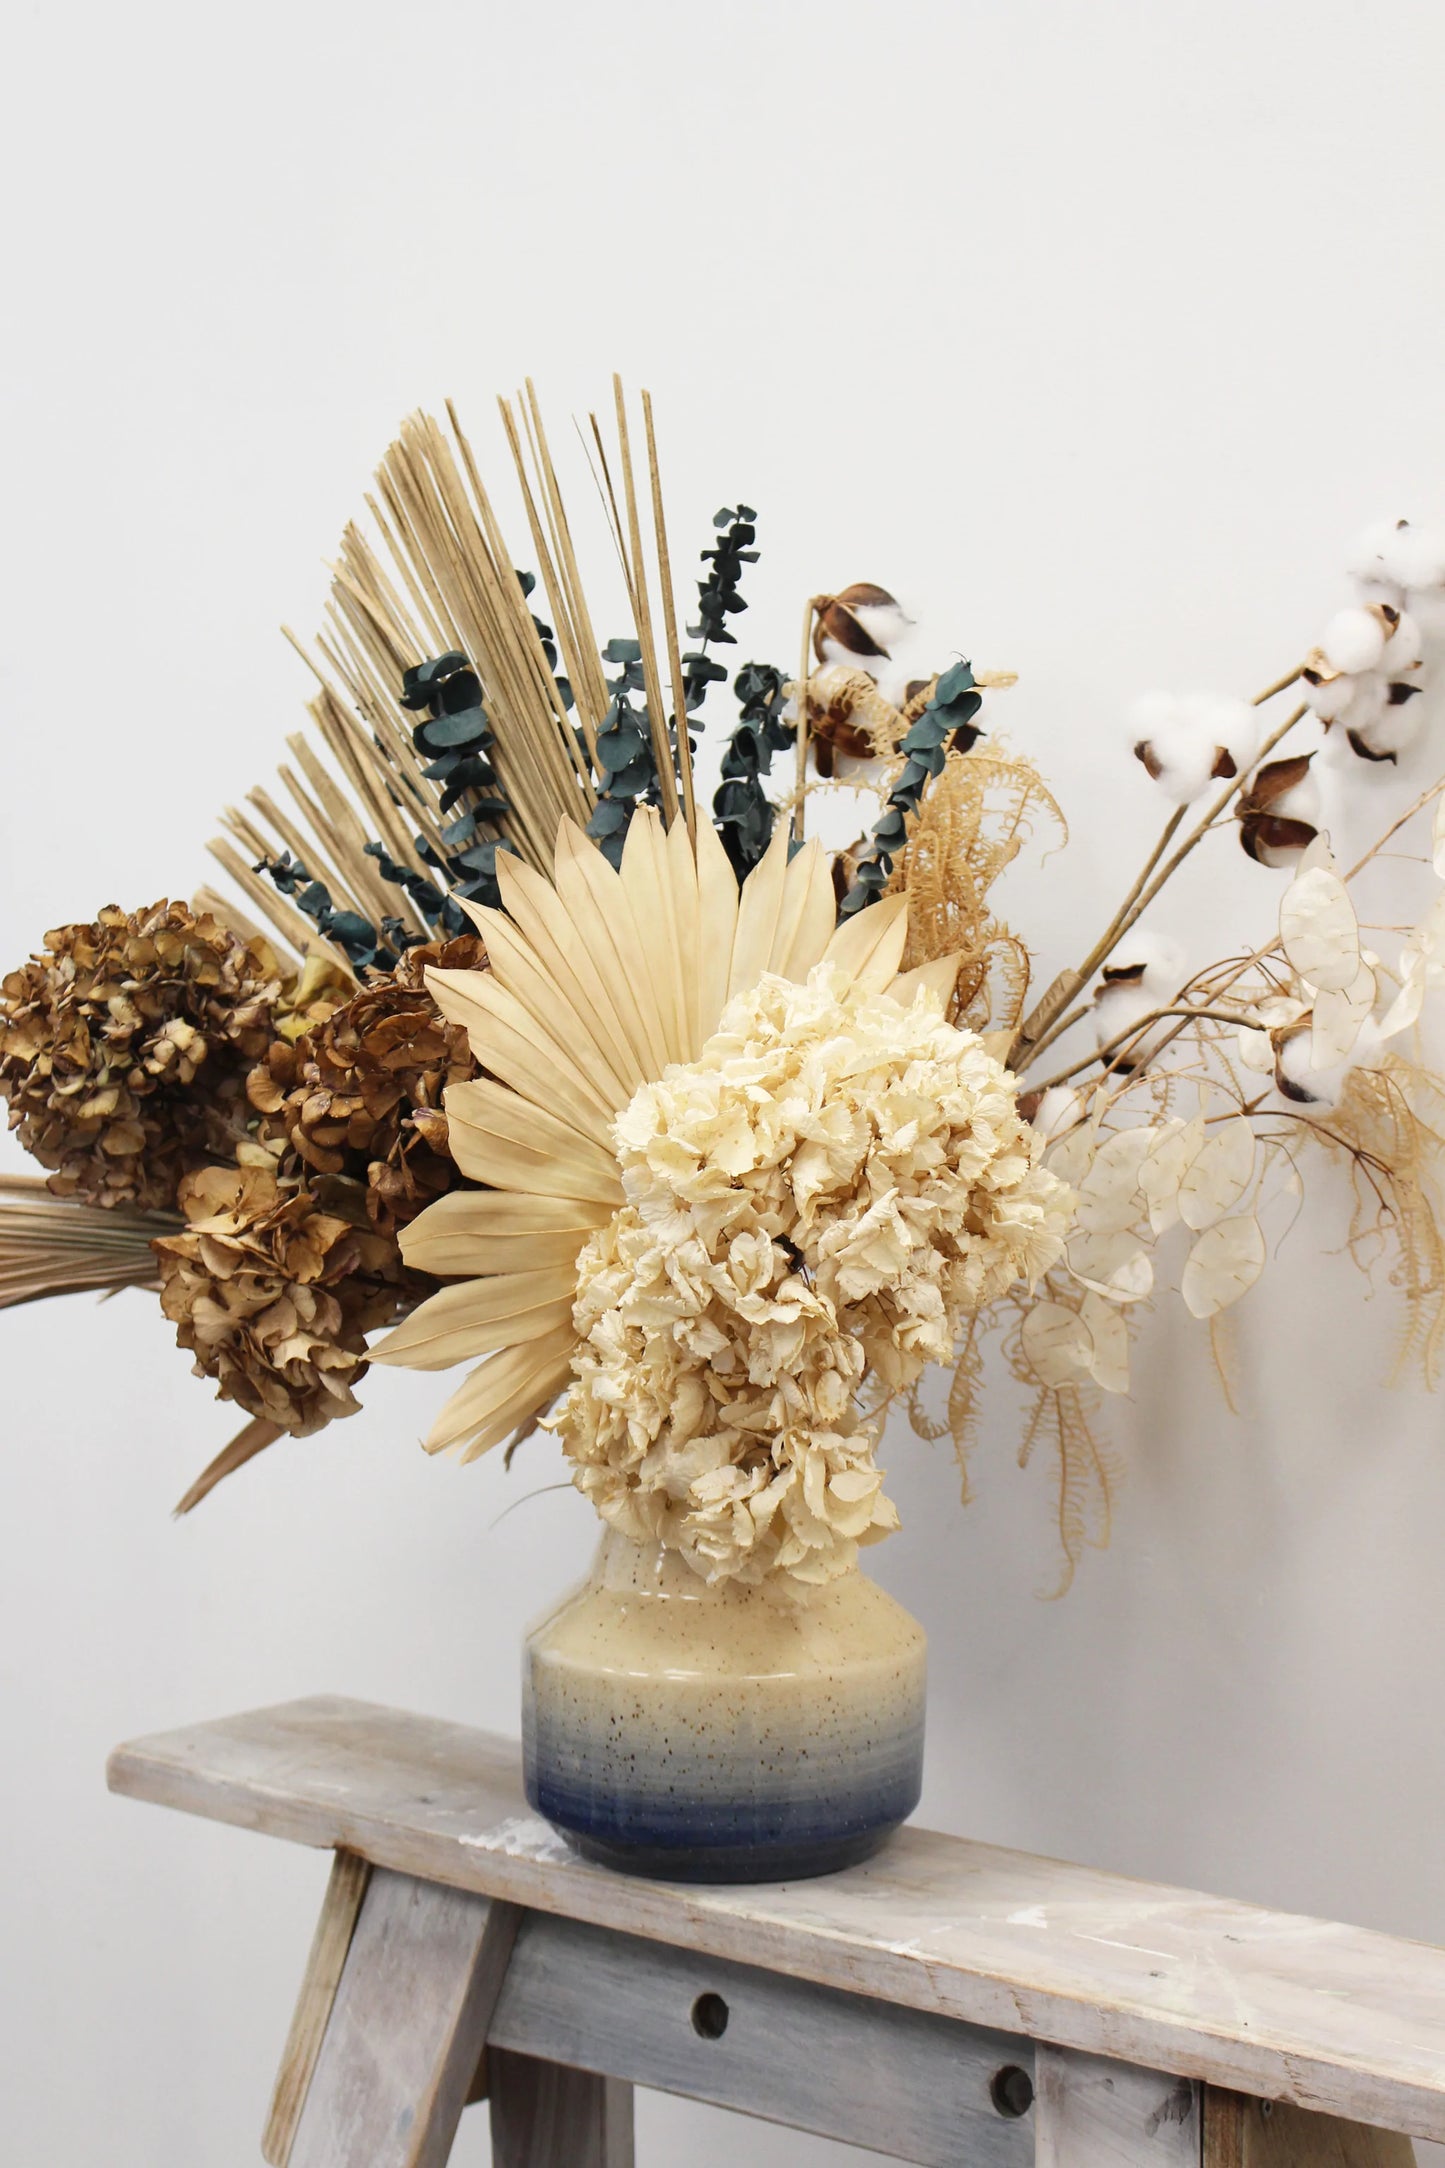 Dried flower arrangement in a ceramic vase